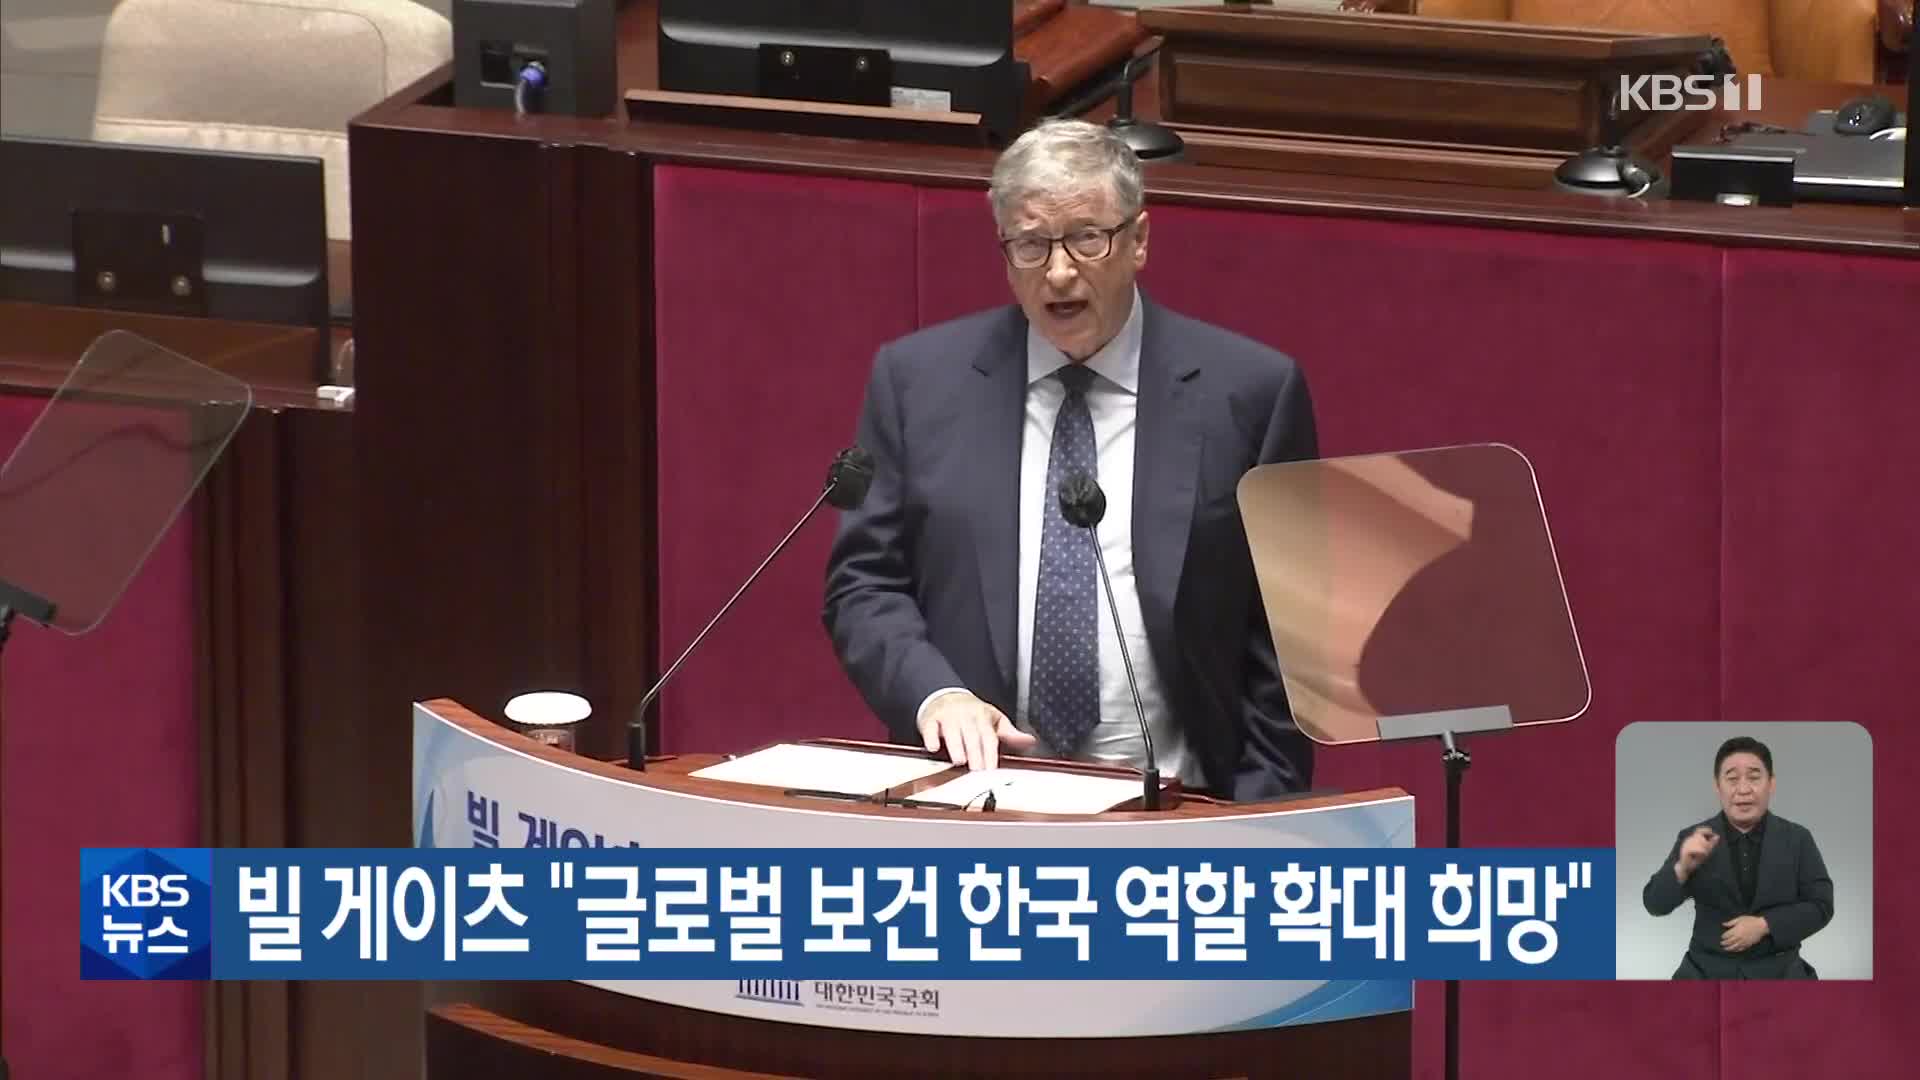 빌 게이츠 “글로벌 보건 한국 역할 확대 희망”